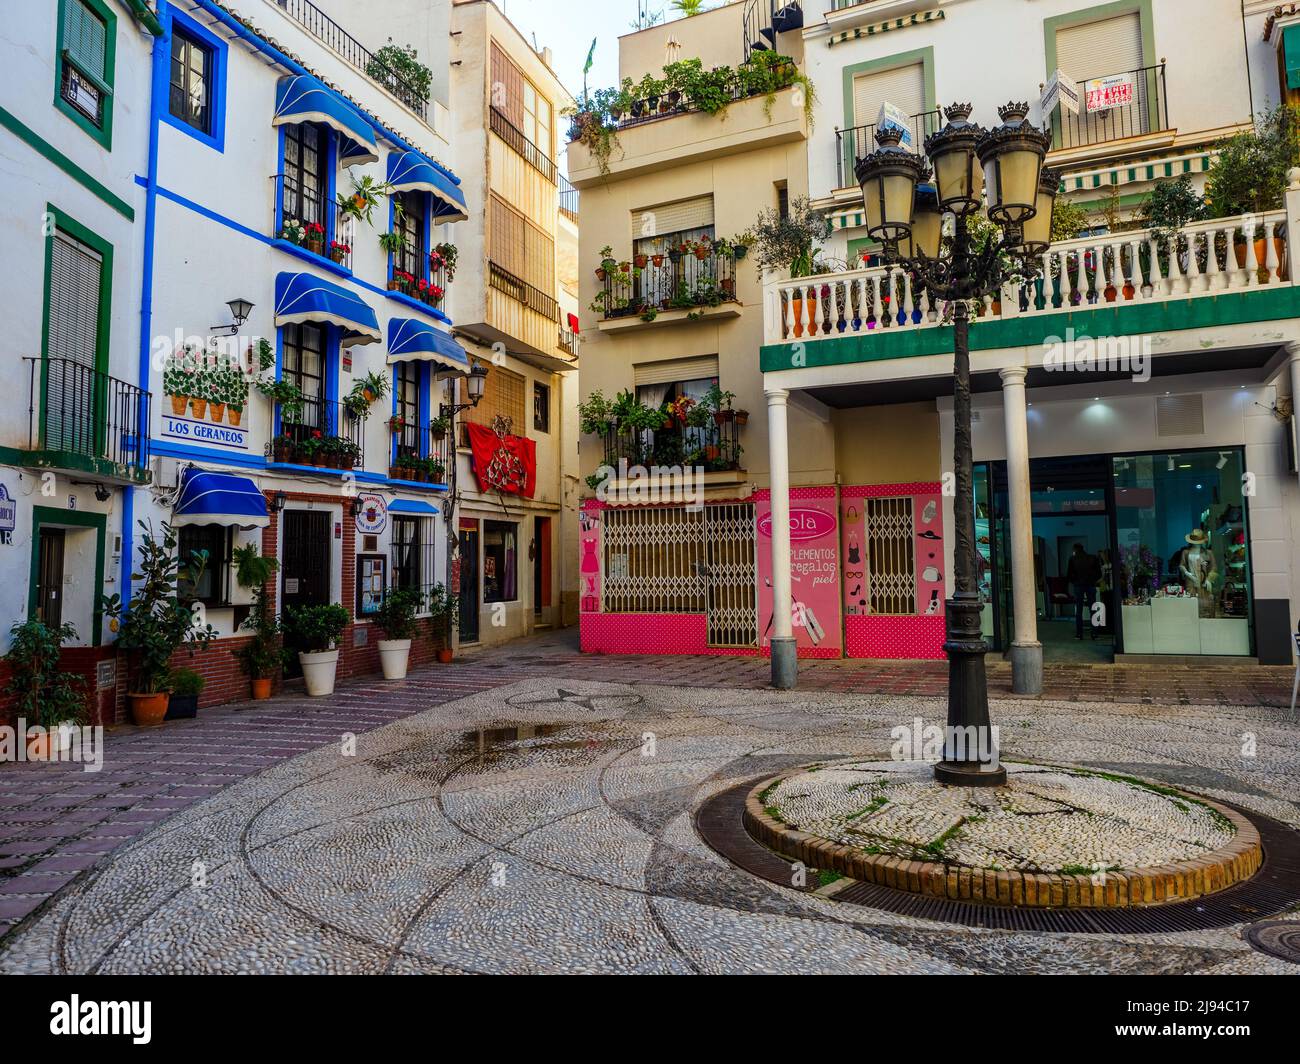 Plaza en el casco antiguo de la ciudad turística de Almunecar en la costa Tropical - Andalucía, España Foto de stock